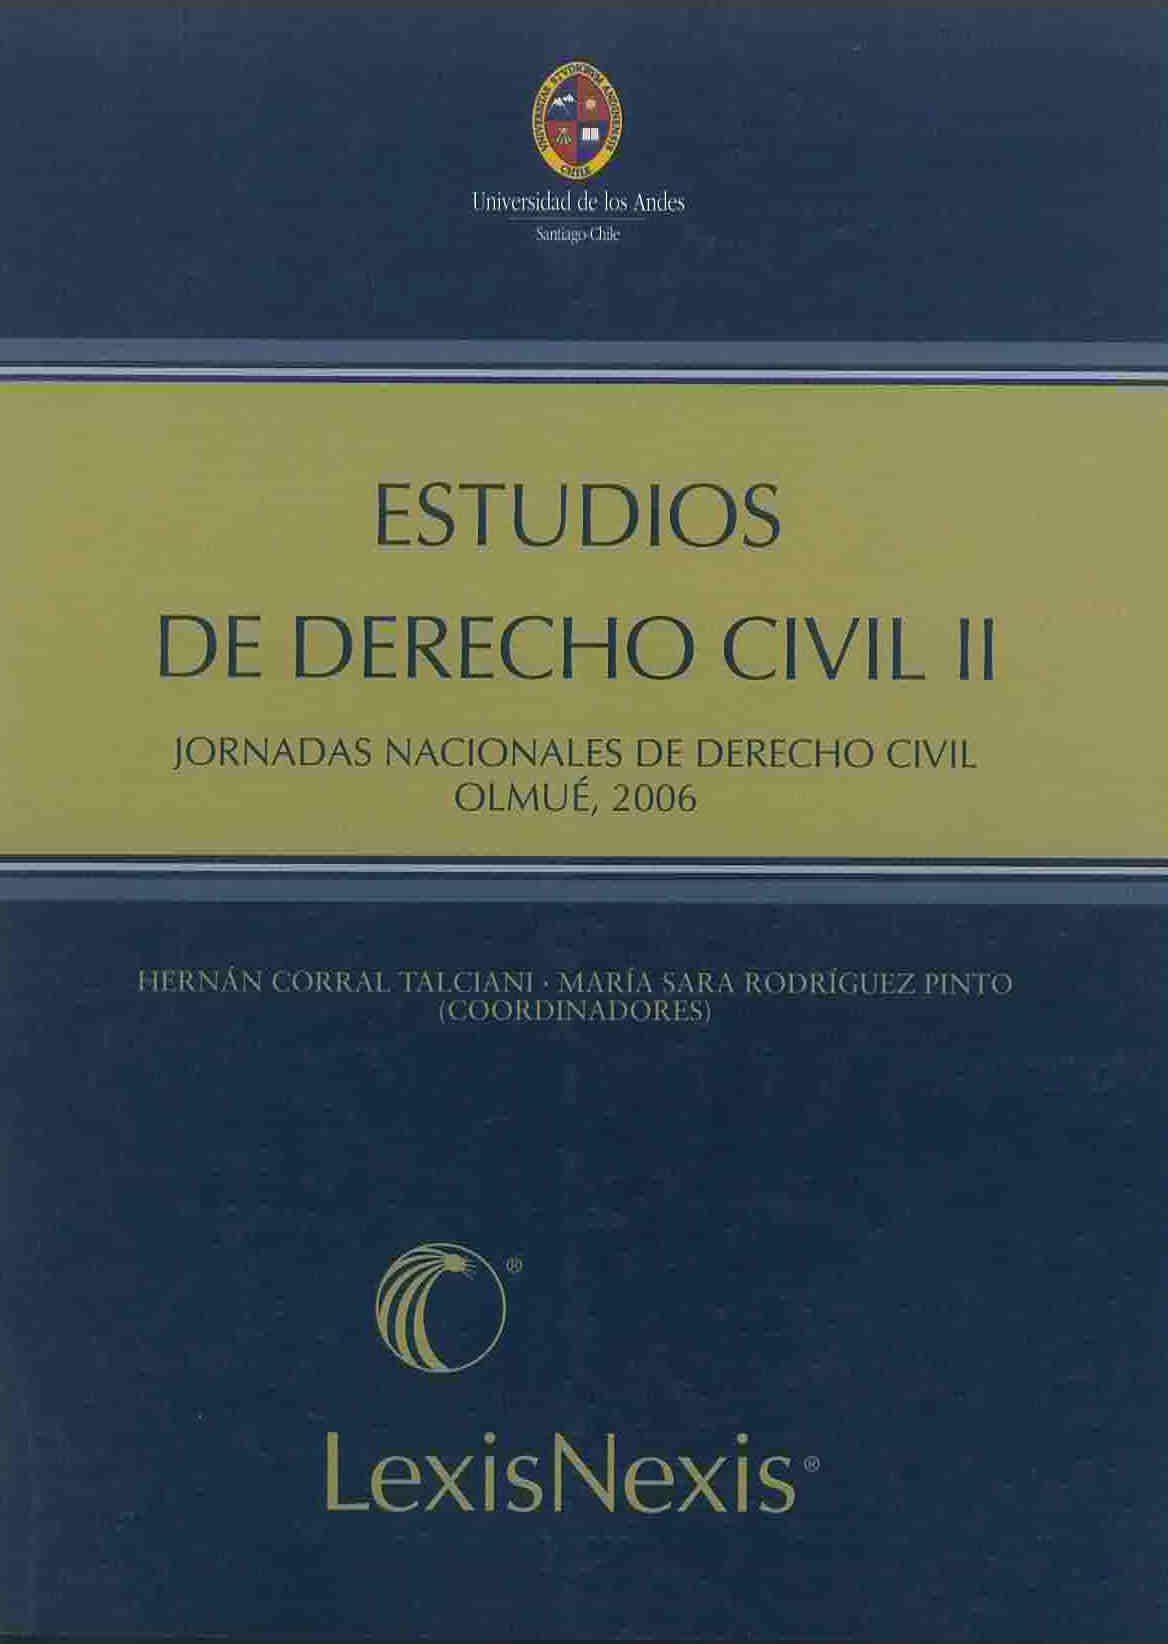 Estudios de derecho civil II. Código civil y principios generales: nuevos problemas, nuevas soluciones IV Jornadas chilenas de derecho civil Olmué (Chile), 3 a 5 de Agosto de 2006 Universidad de los Andes